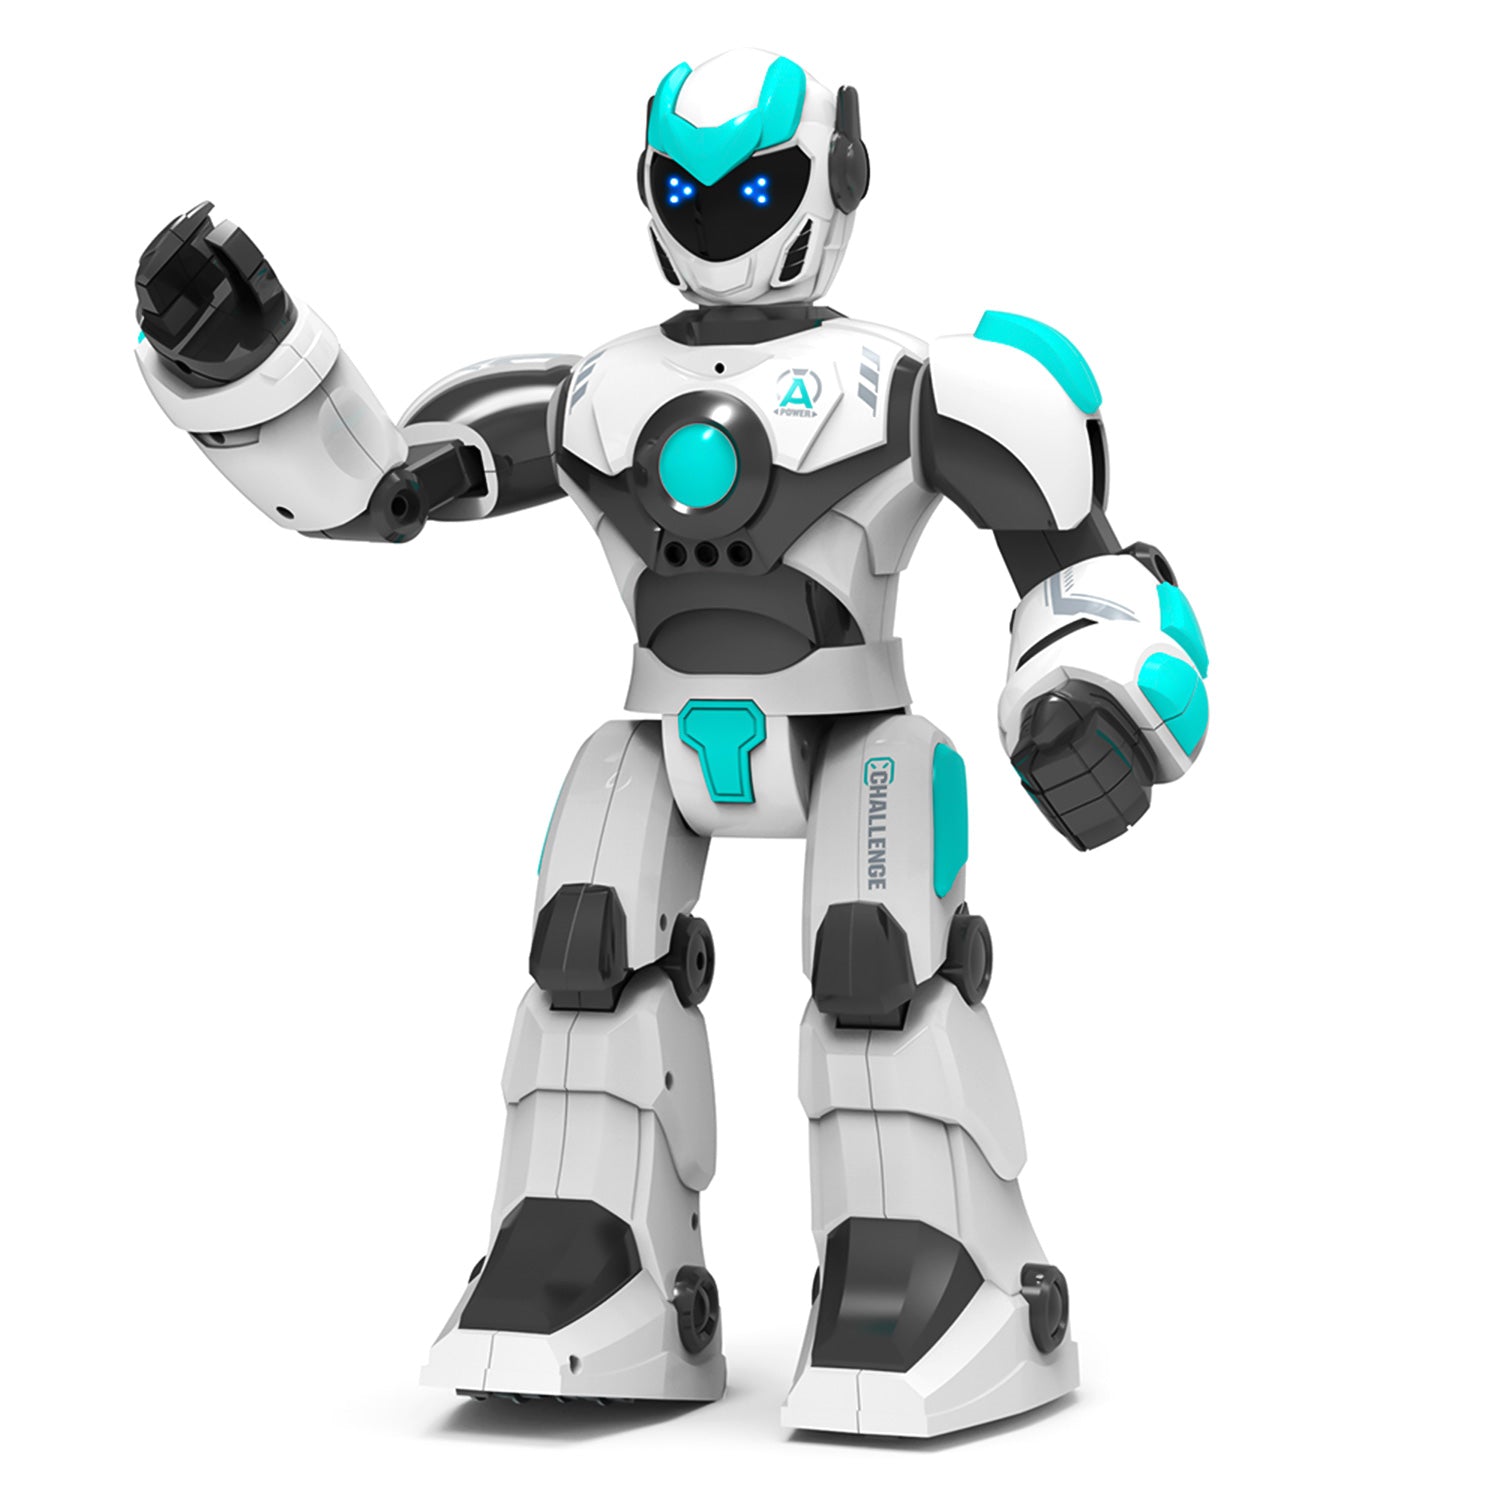 STEMTRON Intelligenter sprachgesteuerter intelligenter ferngesteuerter Roboter für Kinder (weiß)